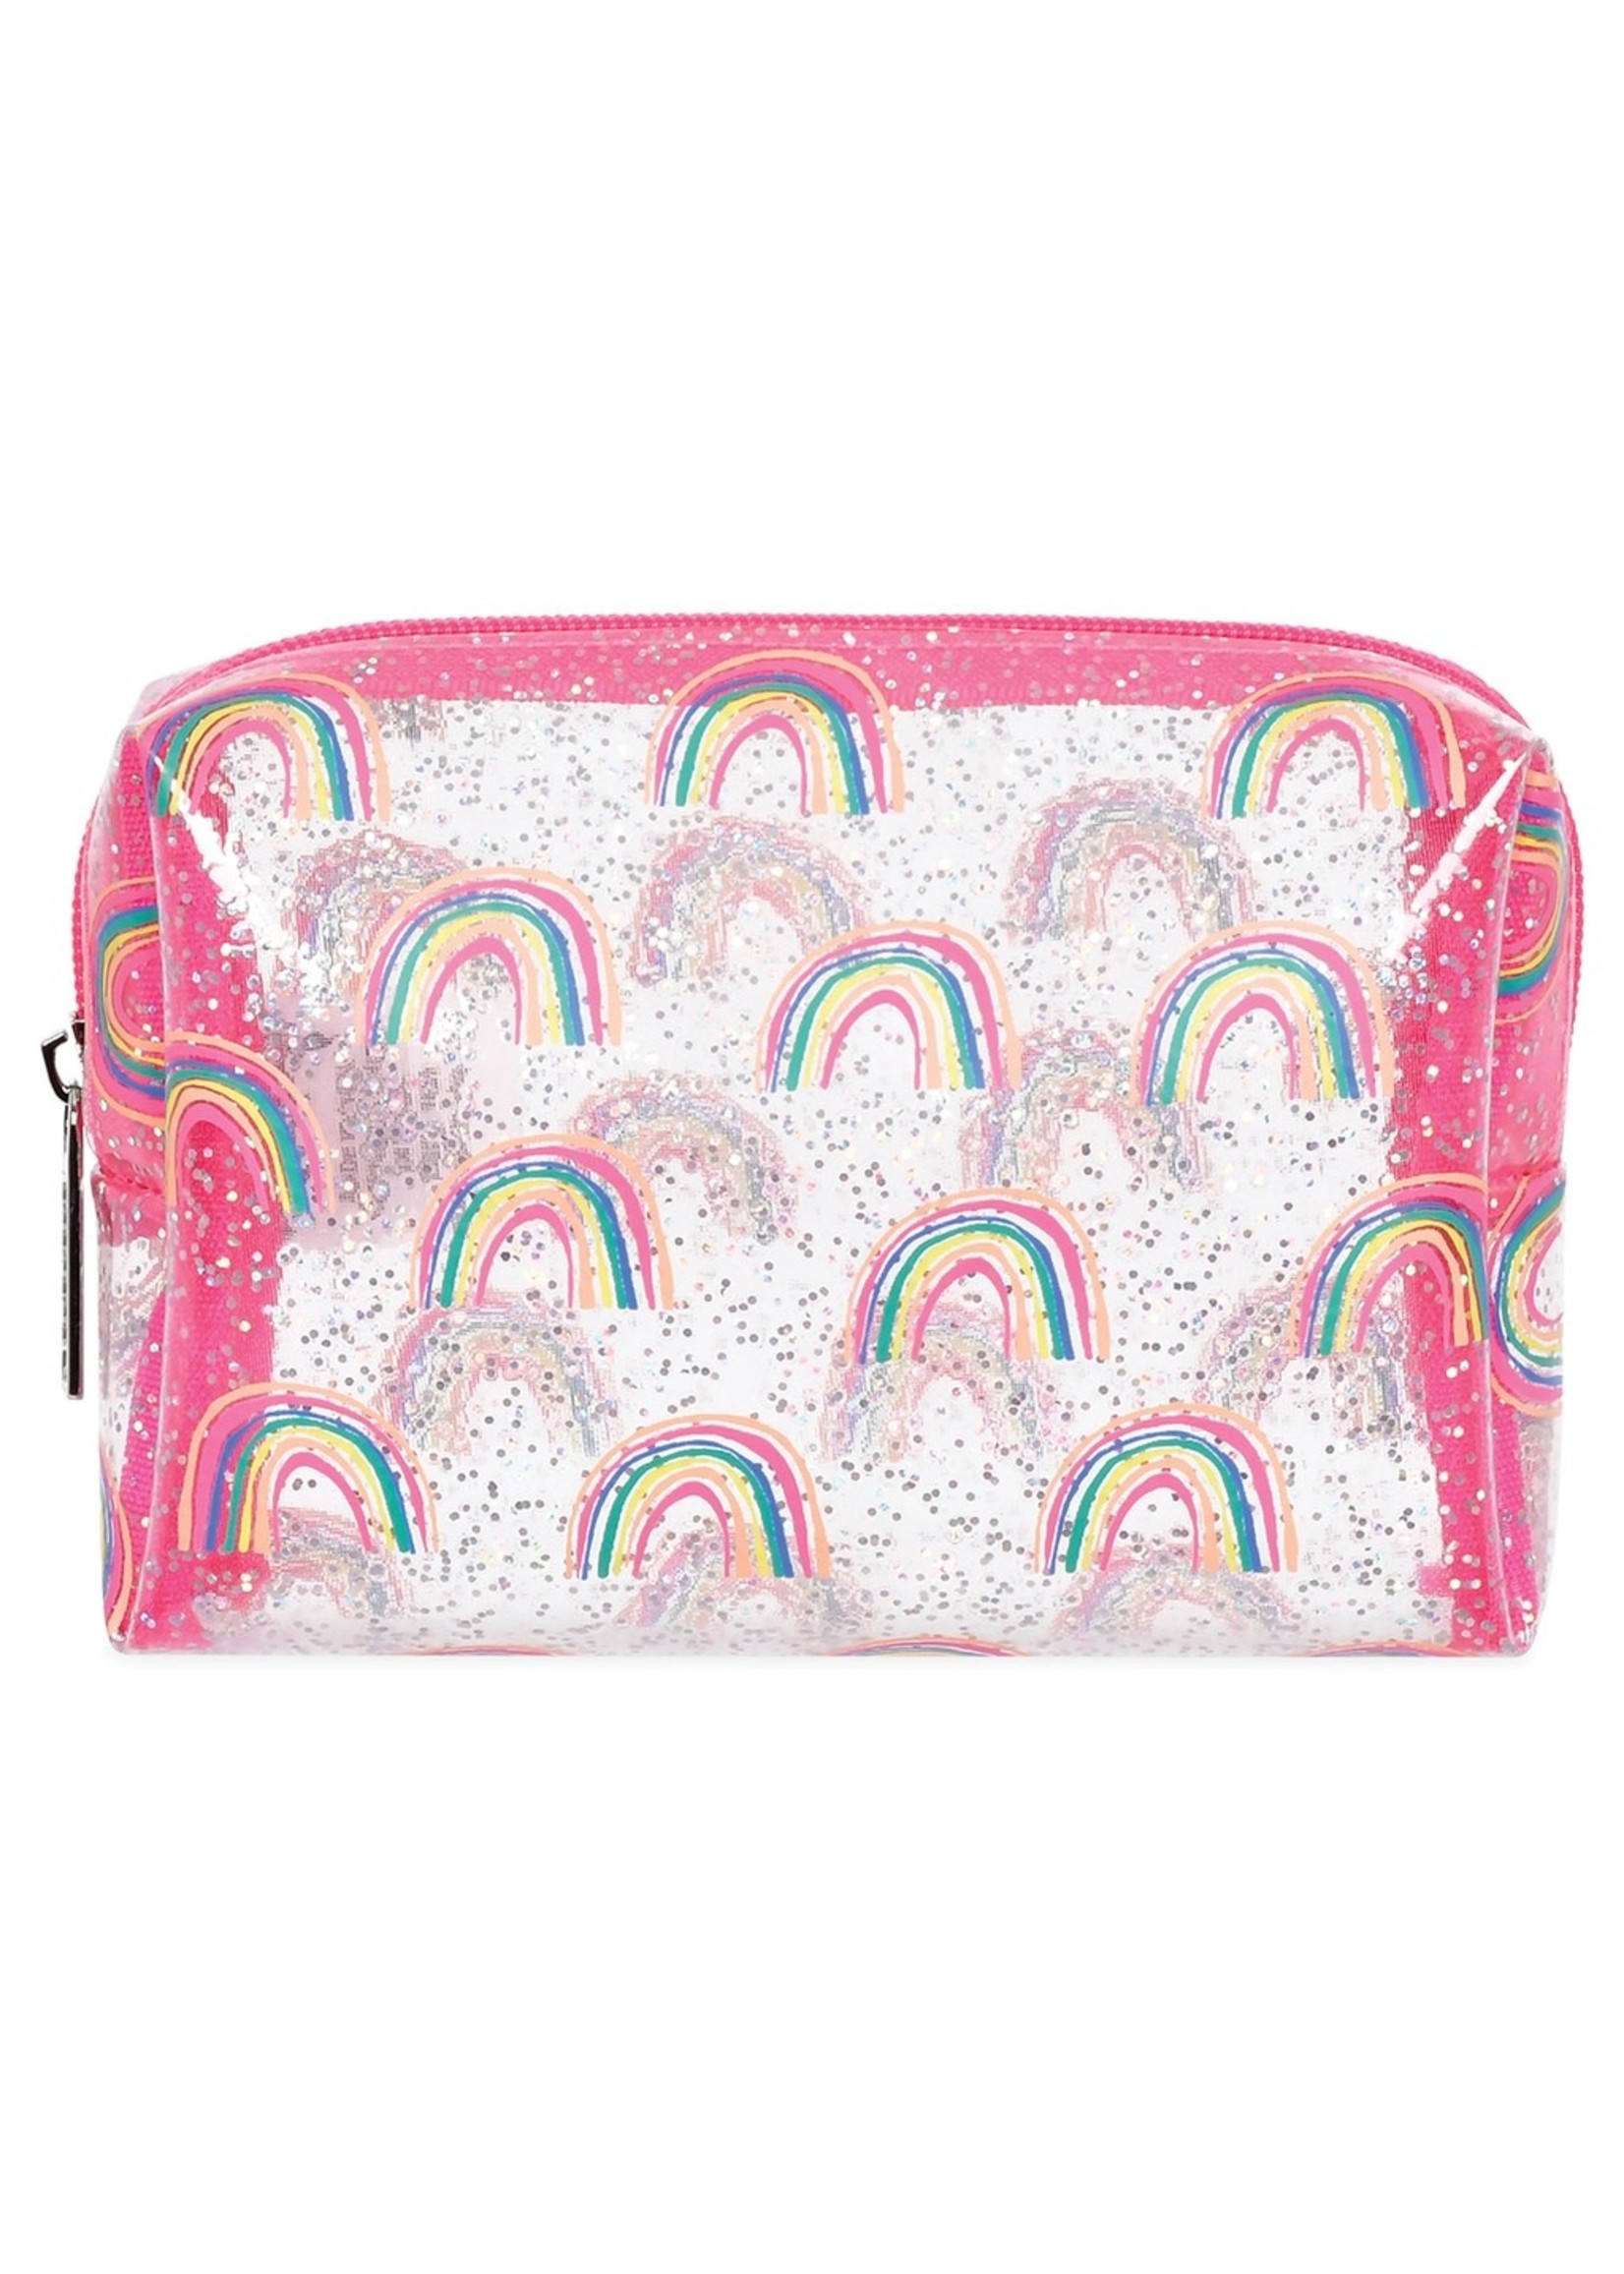 Iscream Rainbow Cosmetic Bags